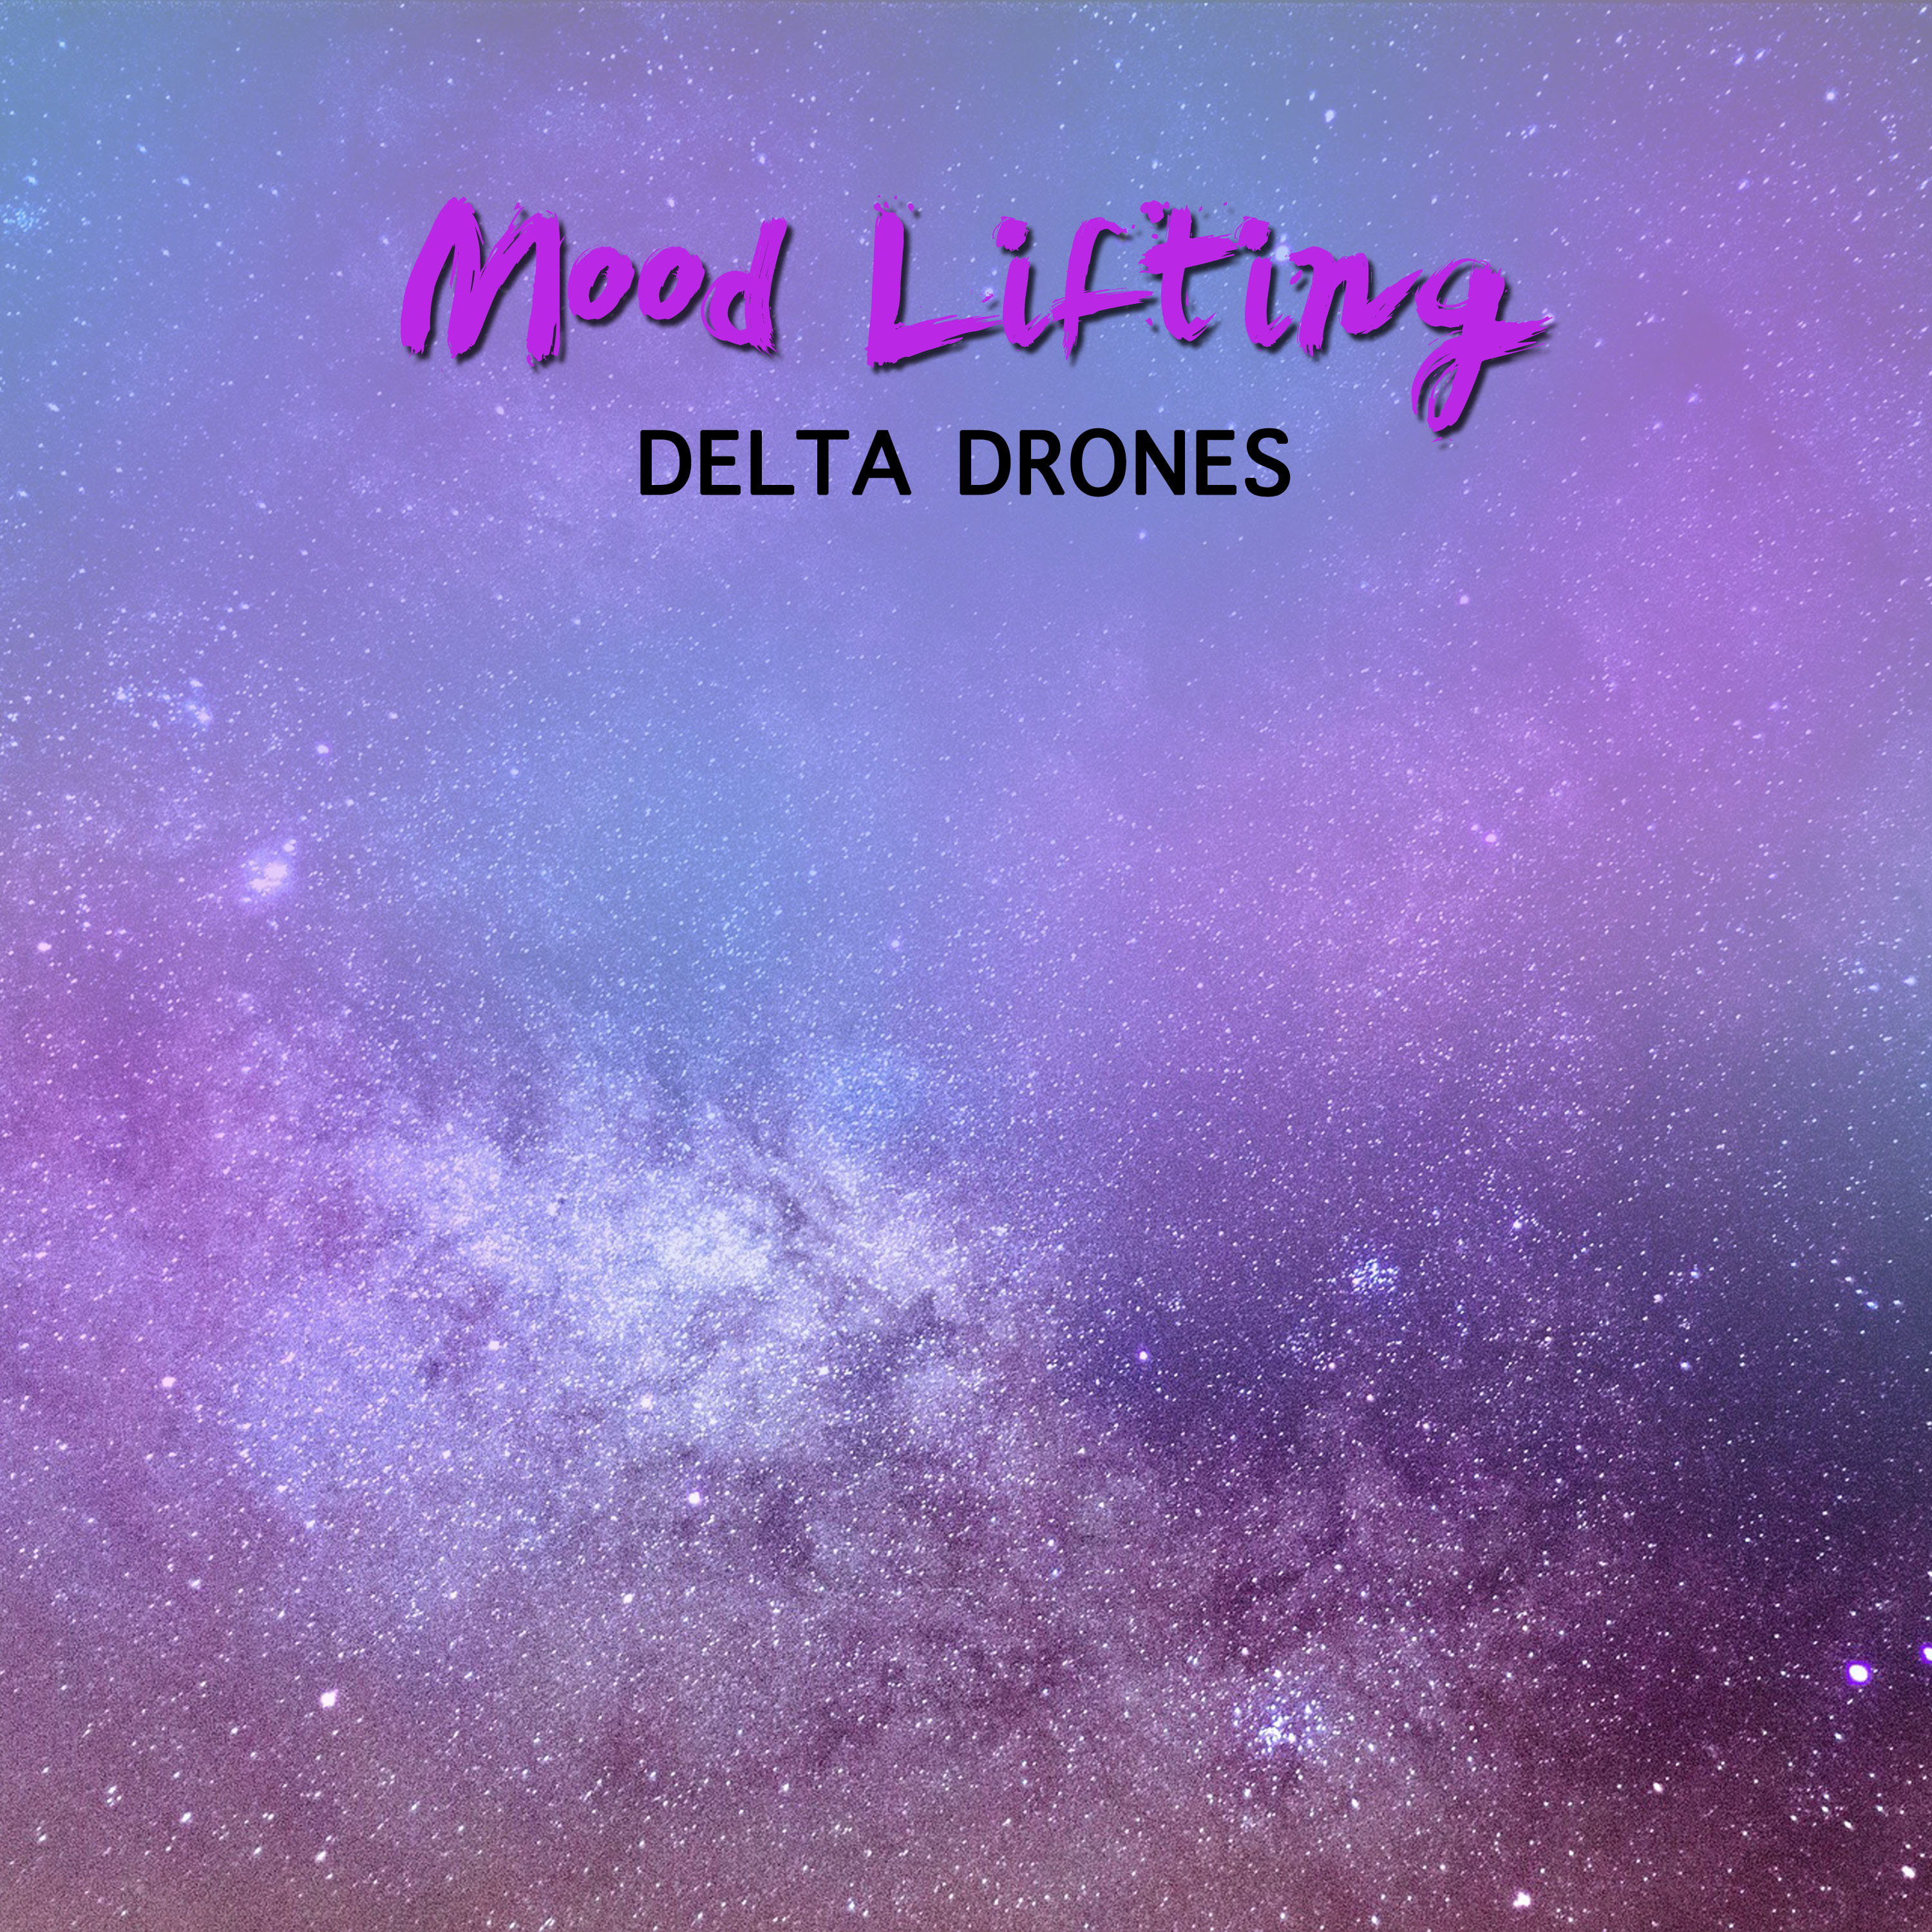 #2018 Mood Lifting Delta Drones